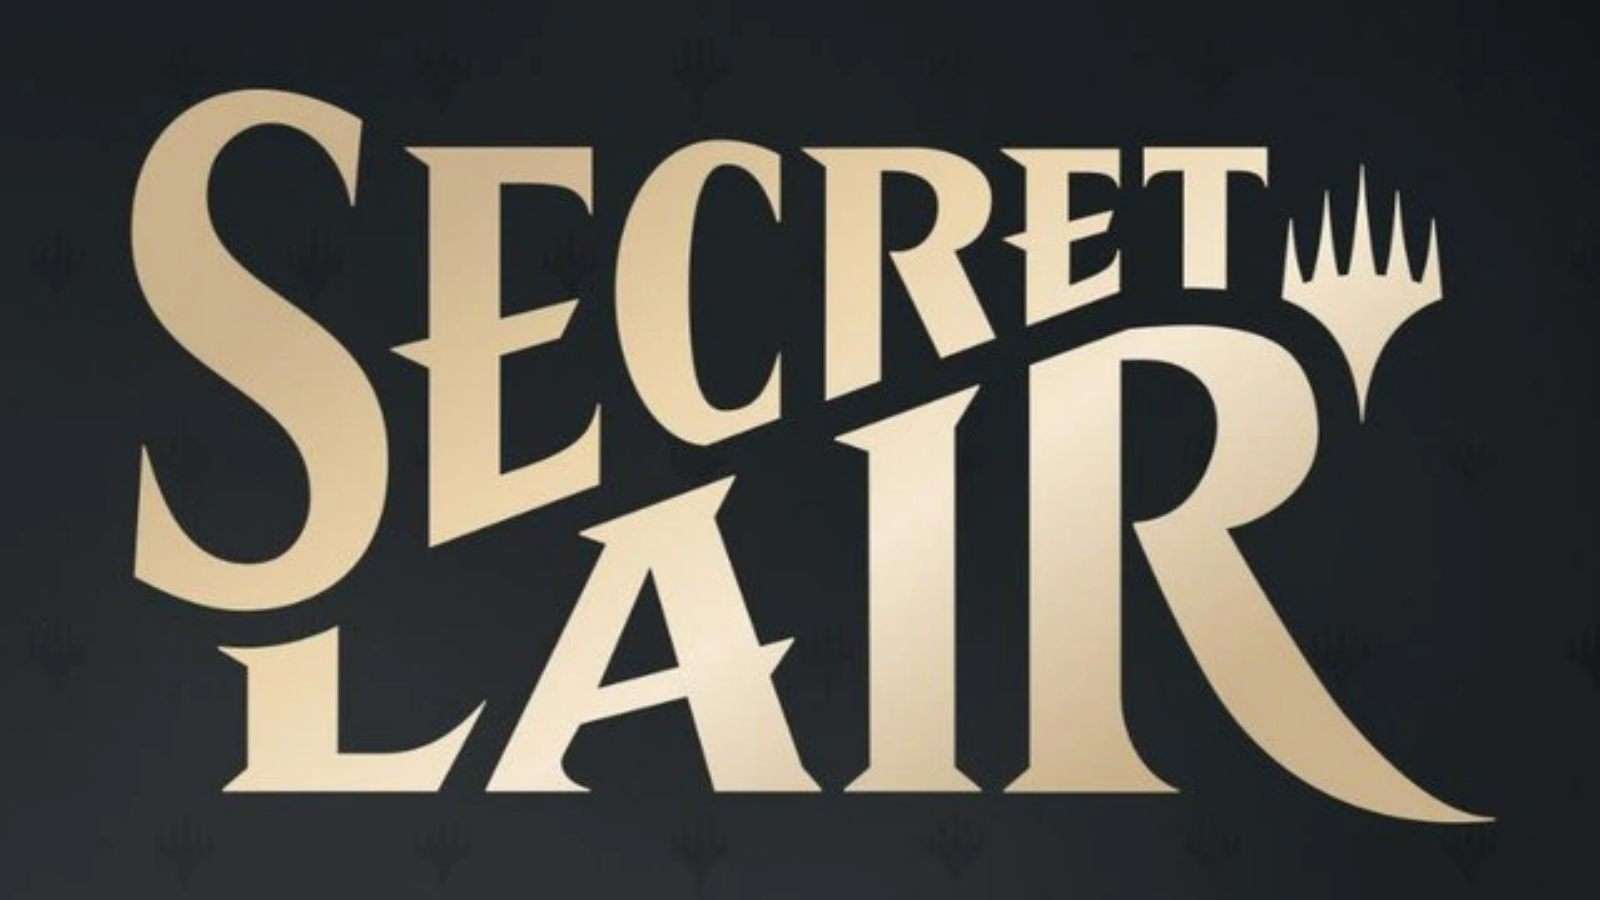 MTG Secret Lair title